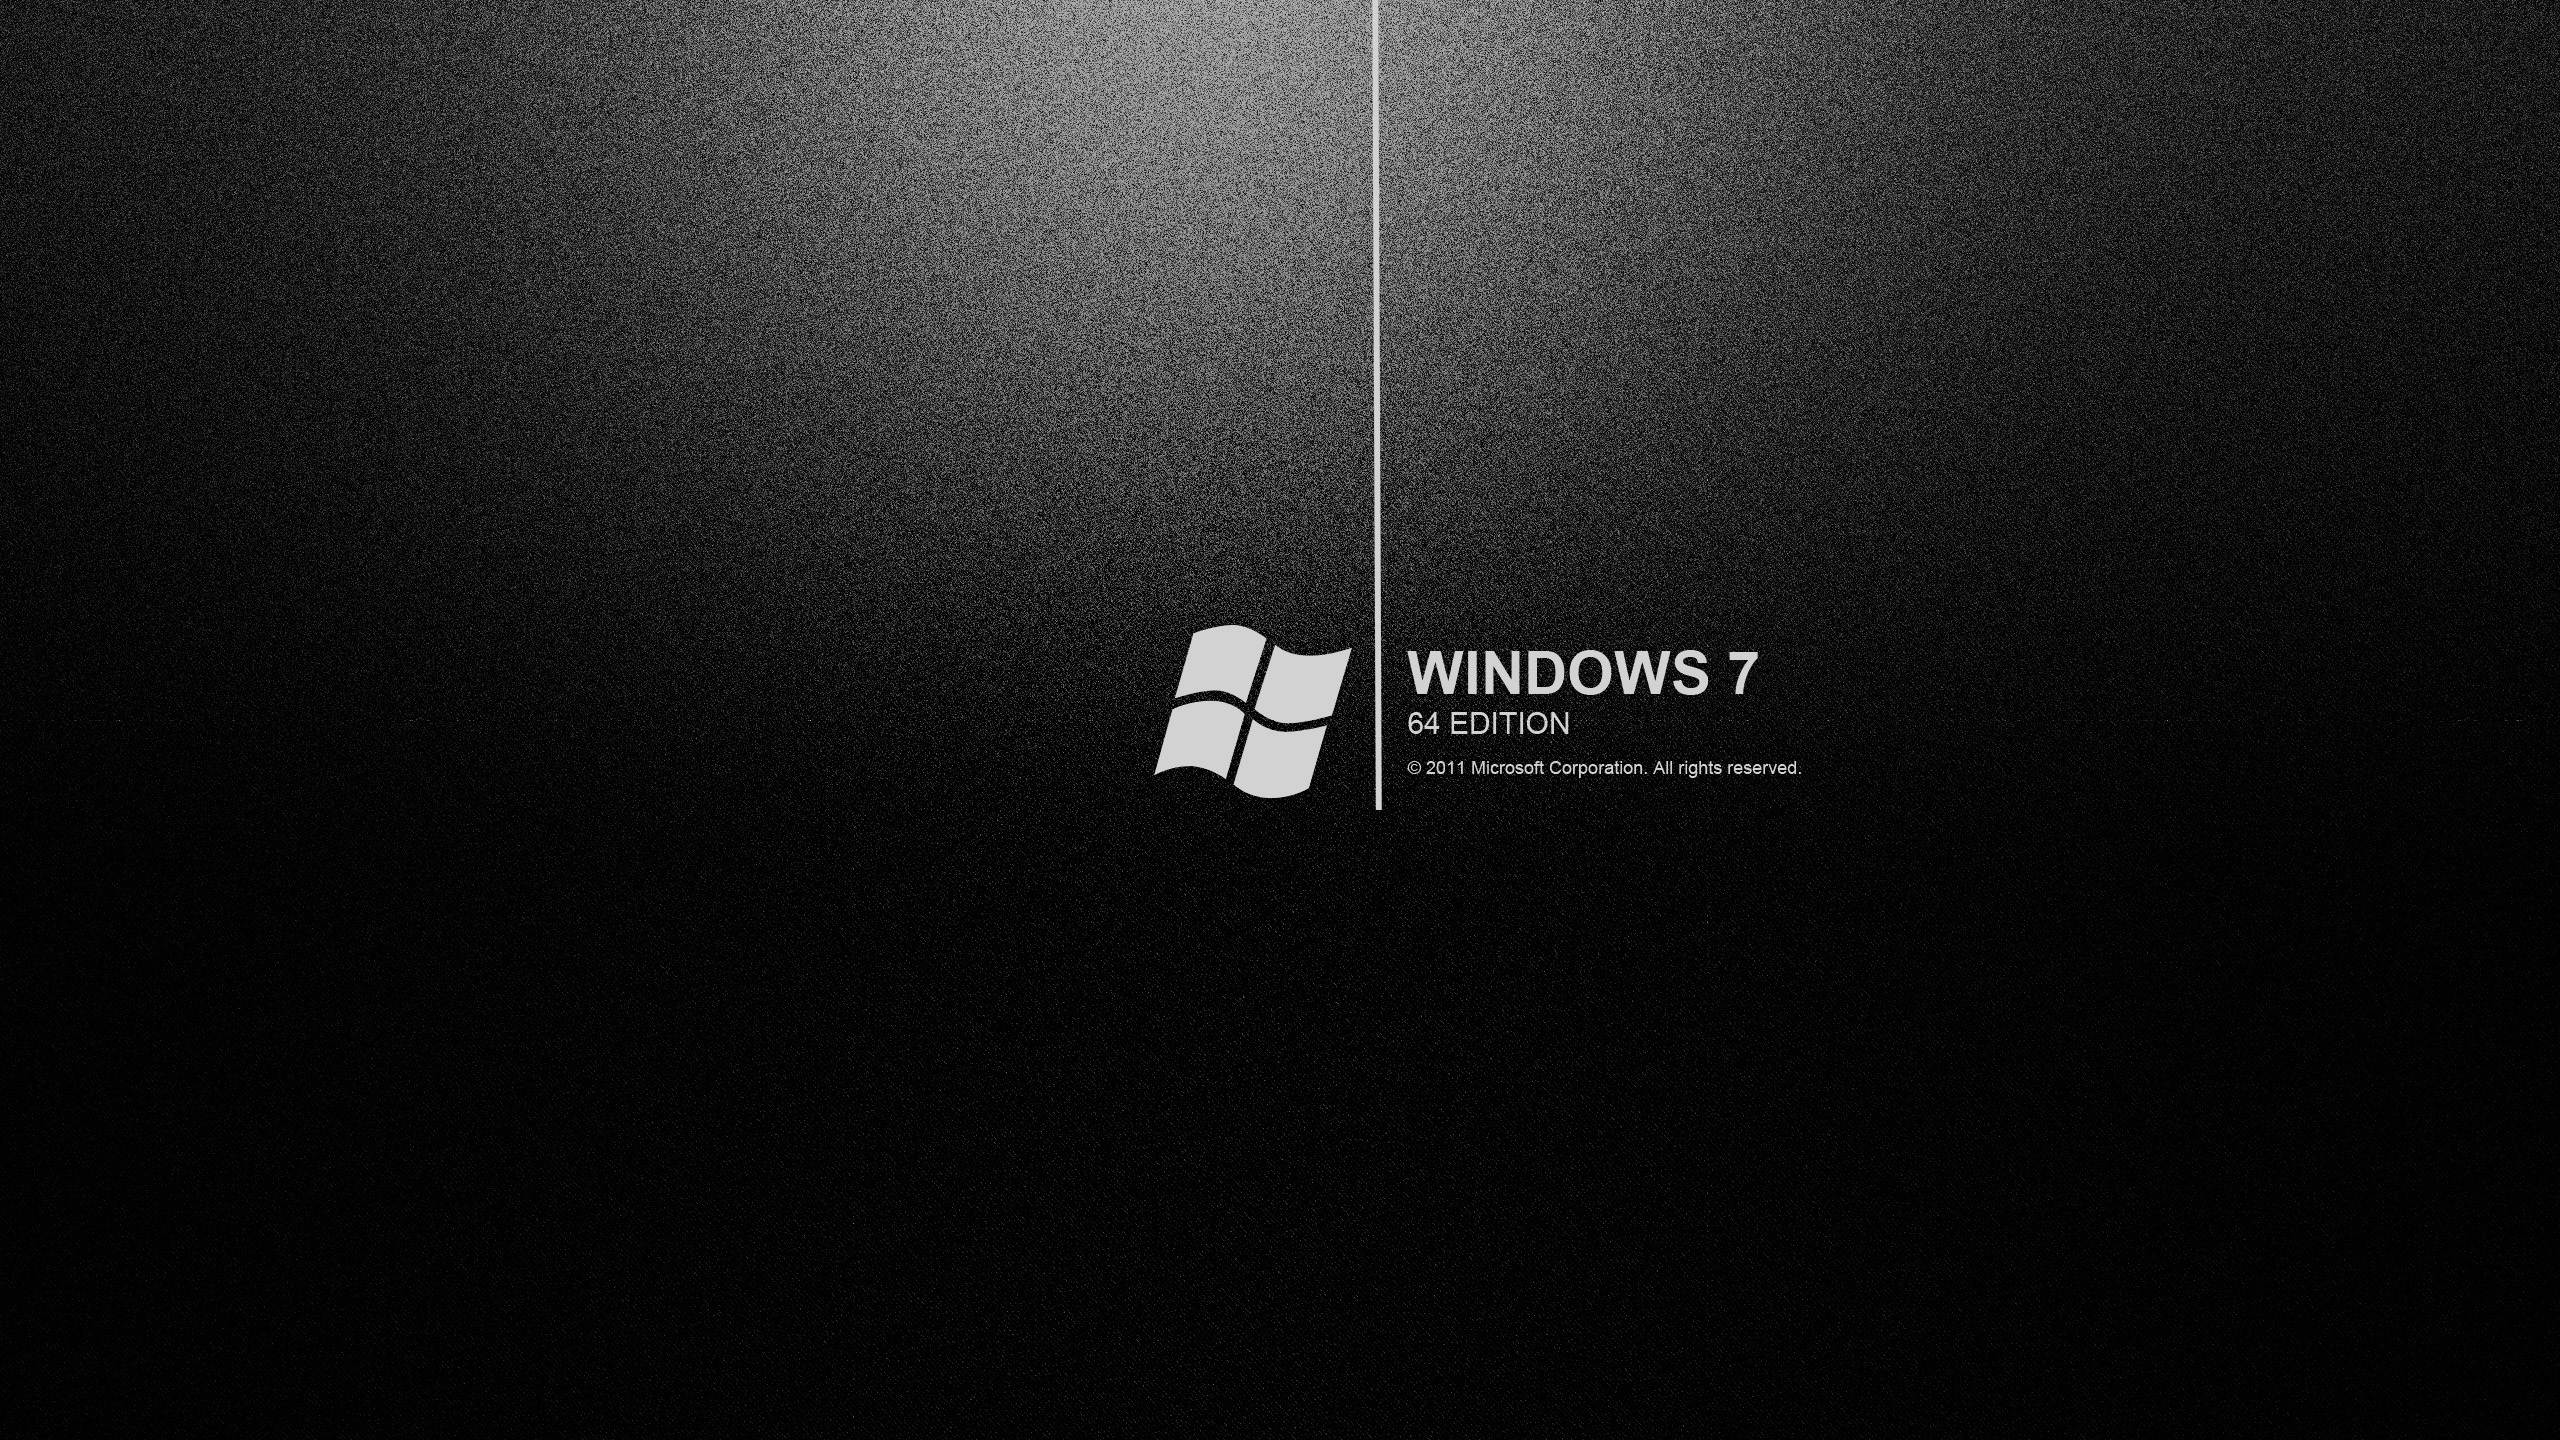 Bức hình nền màn hình đen trên Windows 7 sẽ mang đến cho bạn một trải nghiệm thị giác tuyệt vời. Sự góp mặt của nó sẽ làm nổi bật những sản phẩm của bạn và giúp tạo nên một không gian làm việc hiện đại và độc đáo.